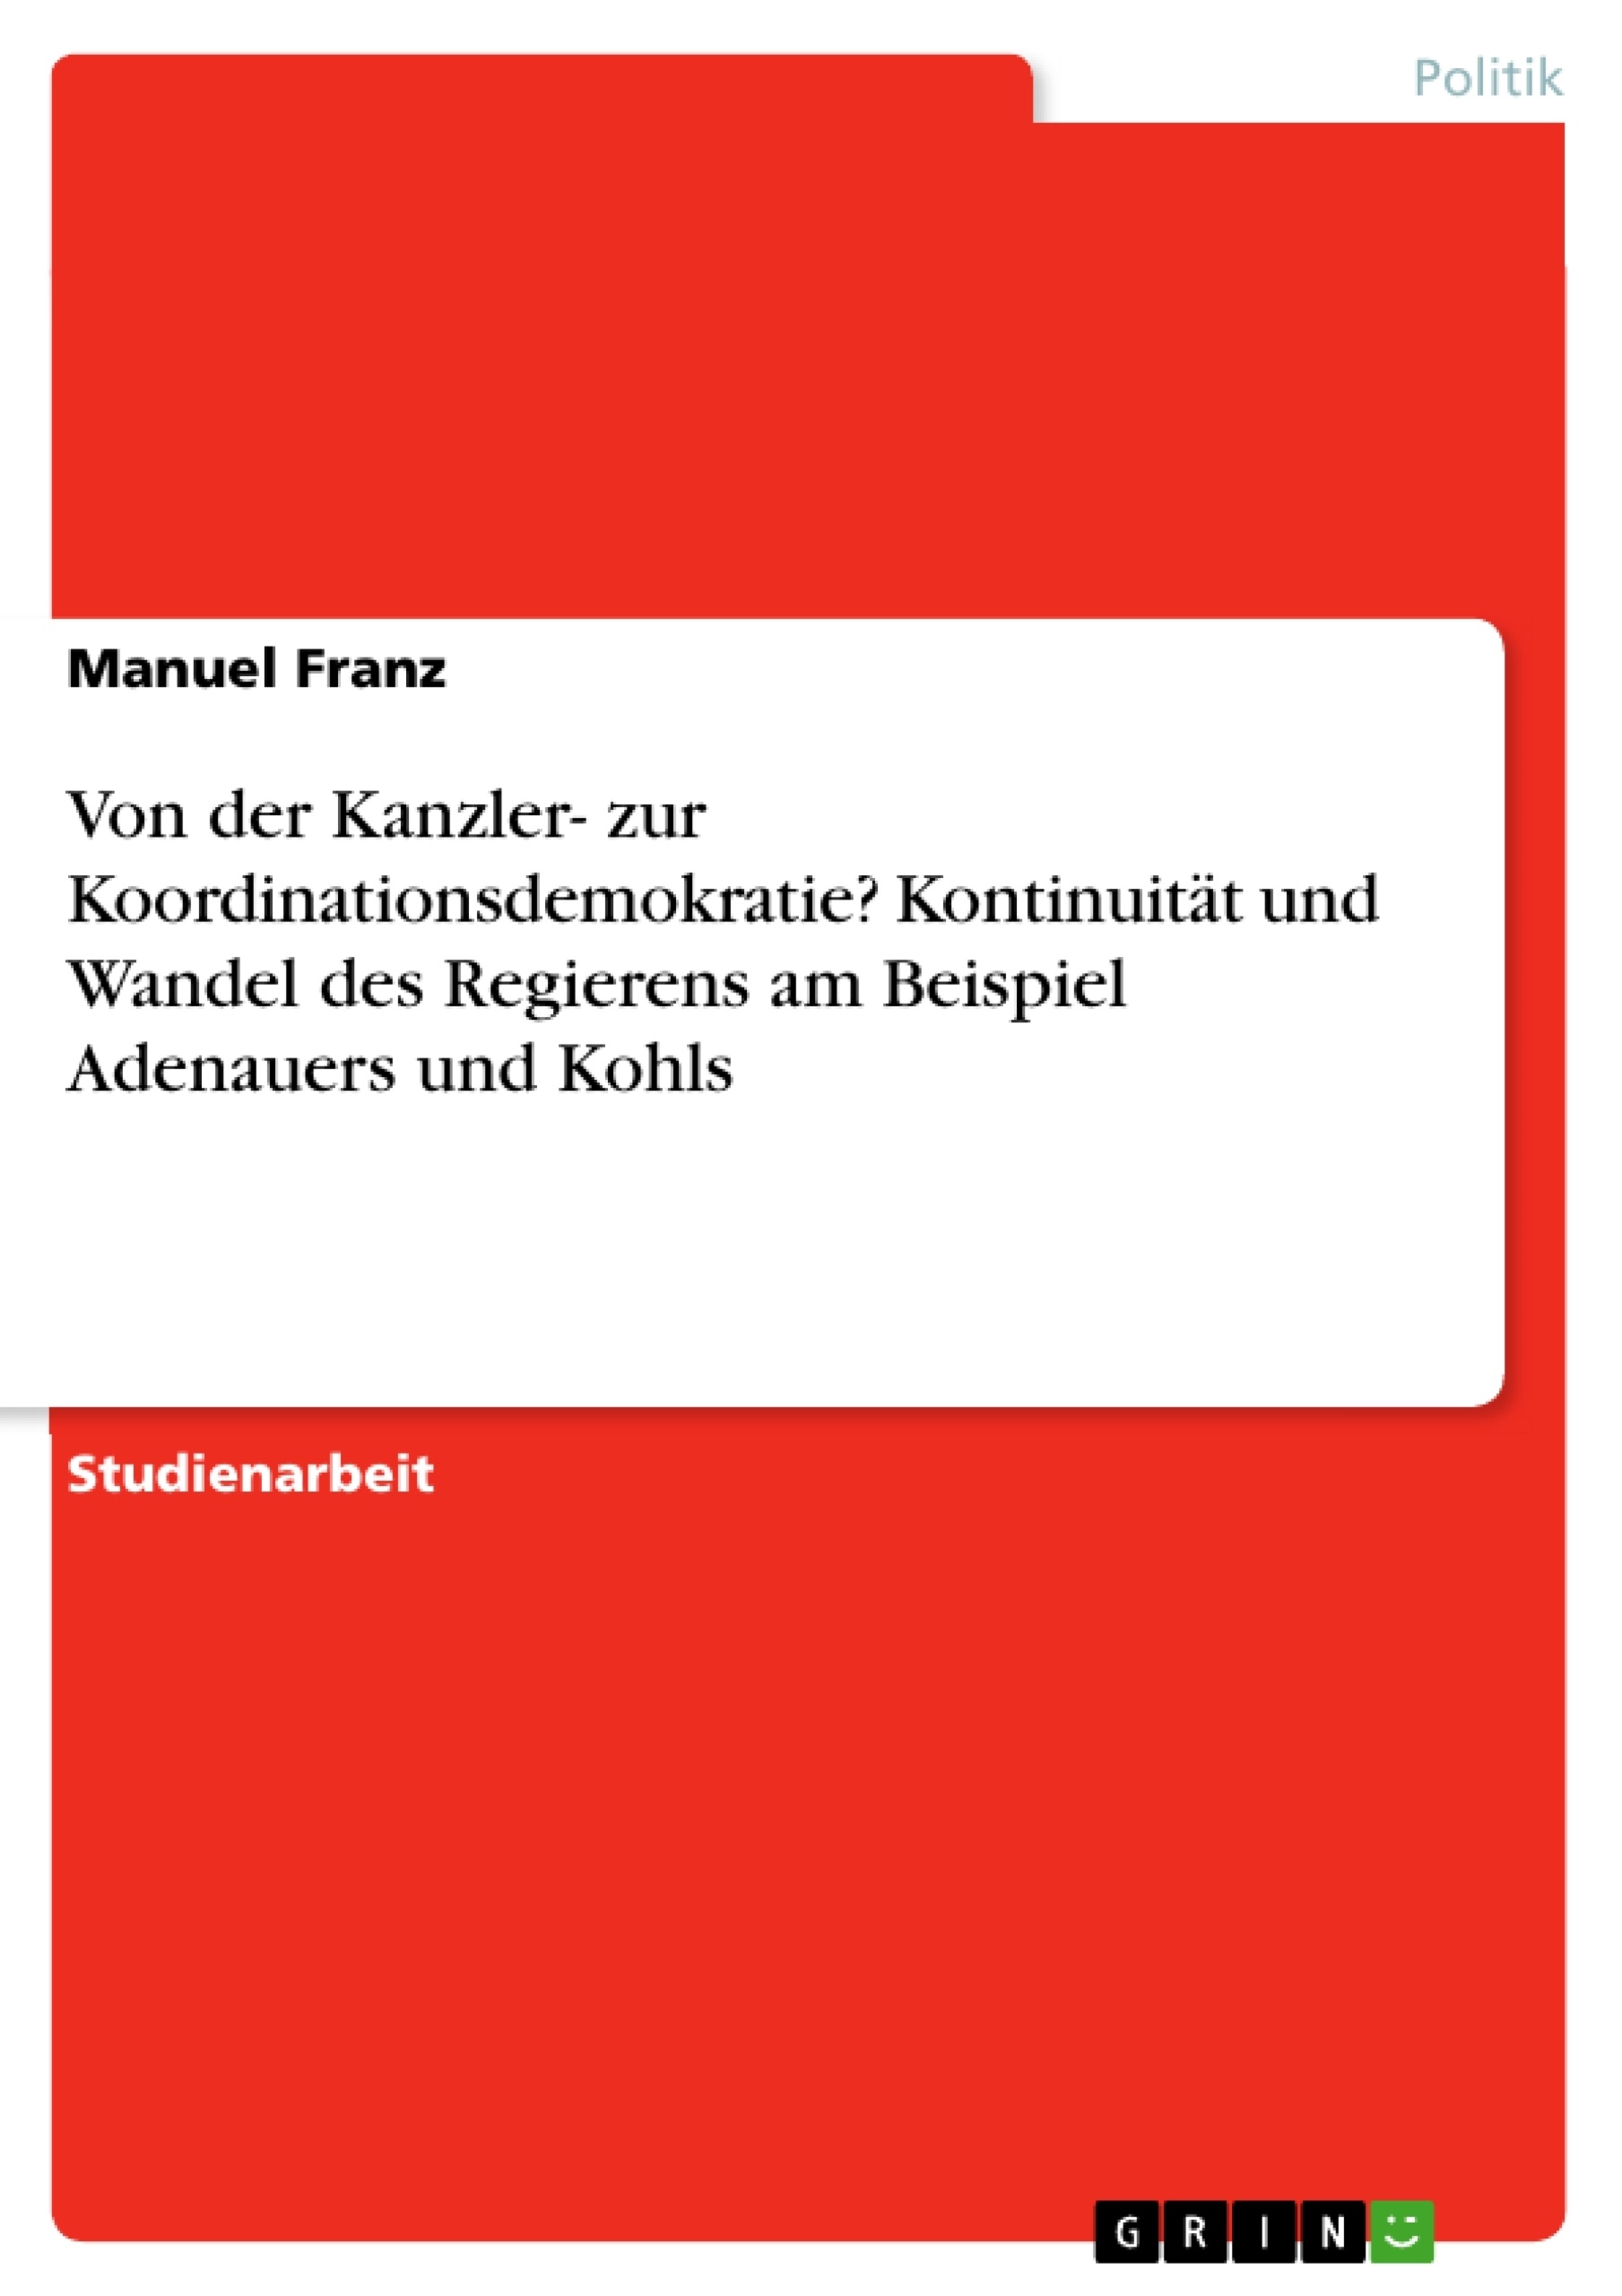 Titre: Von der Kanzler- zur Koordinationsdemokratie? Kontinuität und Wandel des Regierens am Beispiel Adenauers und Kohls